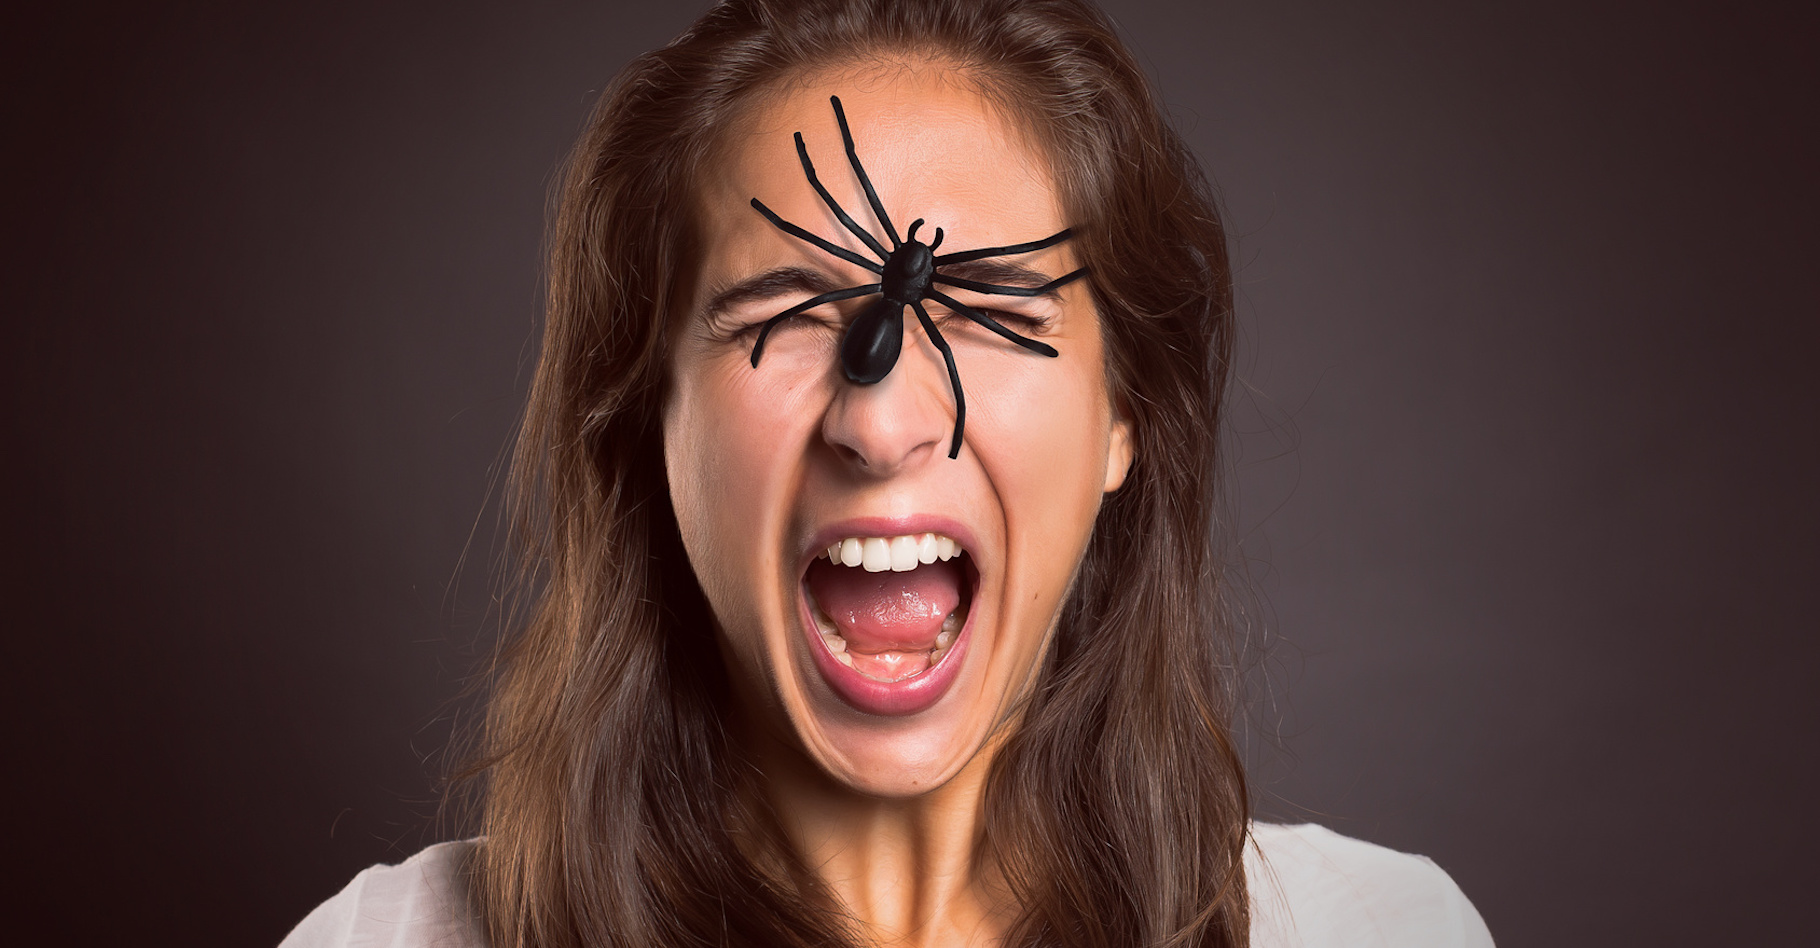 En matière de peur des araignées ou arachnophobie, les thérapies cognitivo-comportementales donnent de bons résultats. © lassedesignen, Fotolia